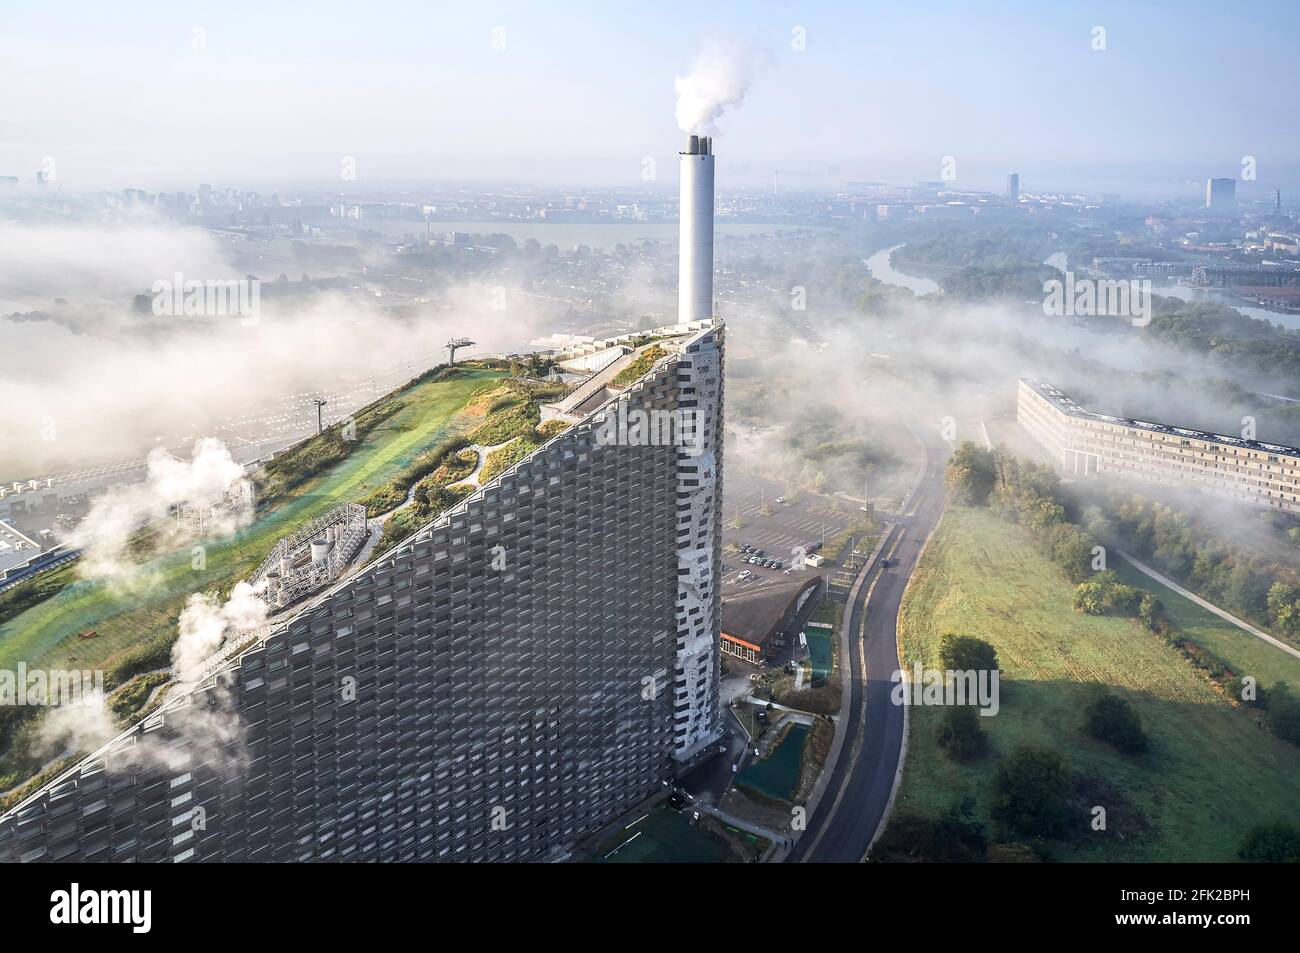 Vista a distanza con nuvole. Centrale elettrica di CoppenHill, Copenhagen, Danimarca. Architetto: BIG Bjarke Ingels Group, 2019. Foto Stock